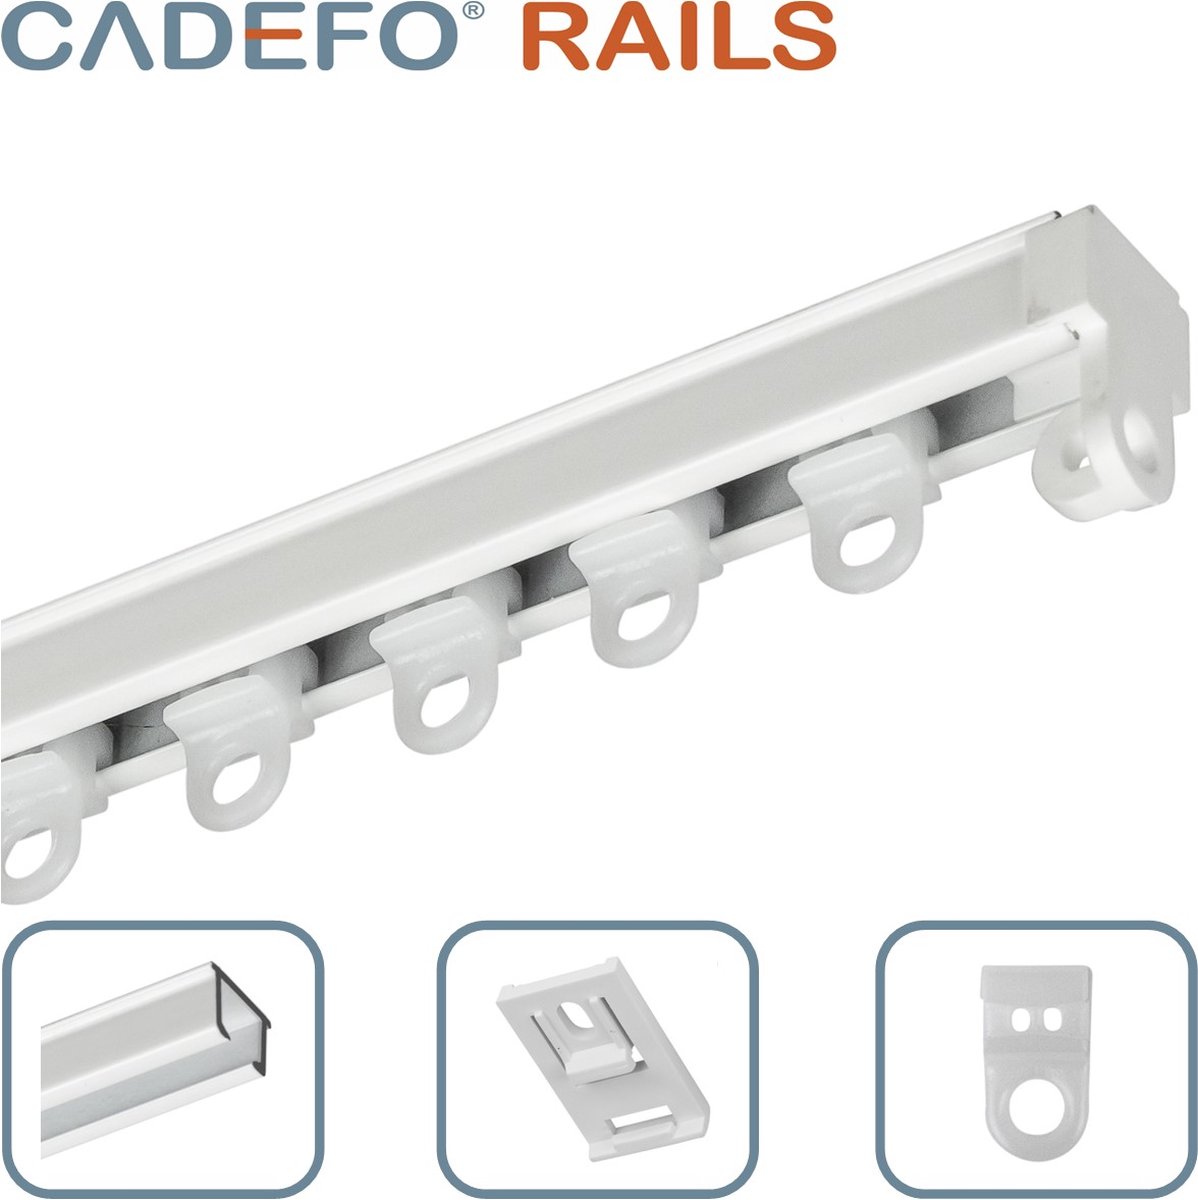 CADEFO RAILS (201 - 250 cm) Gordijnrails - Compleet op maat! - UIT 1 STUK - Leverbaar tot 6 meter - Plafondbevestiging - Lengte 224 cm